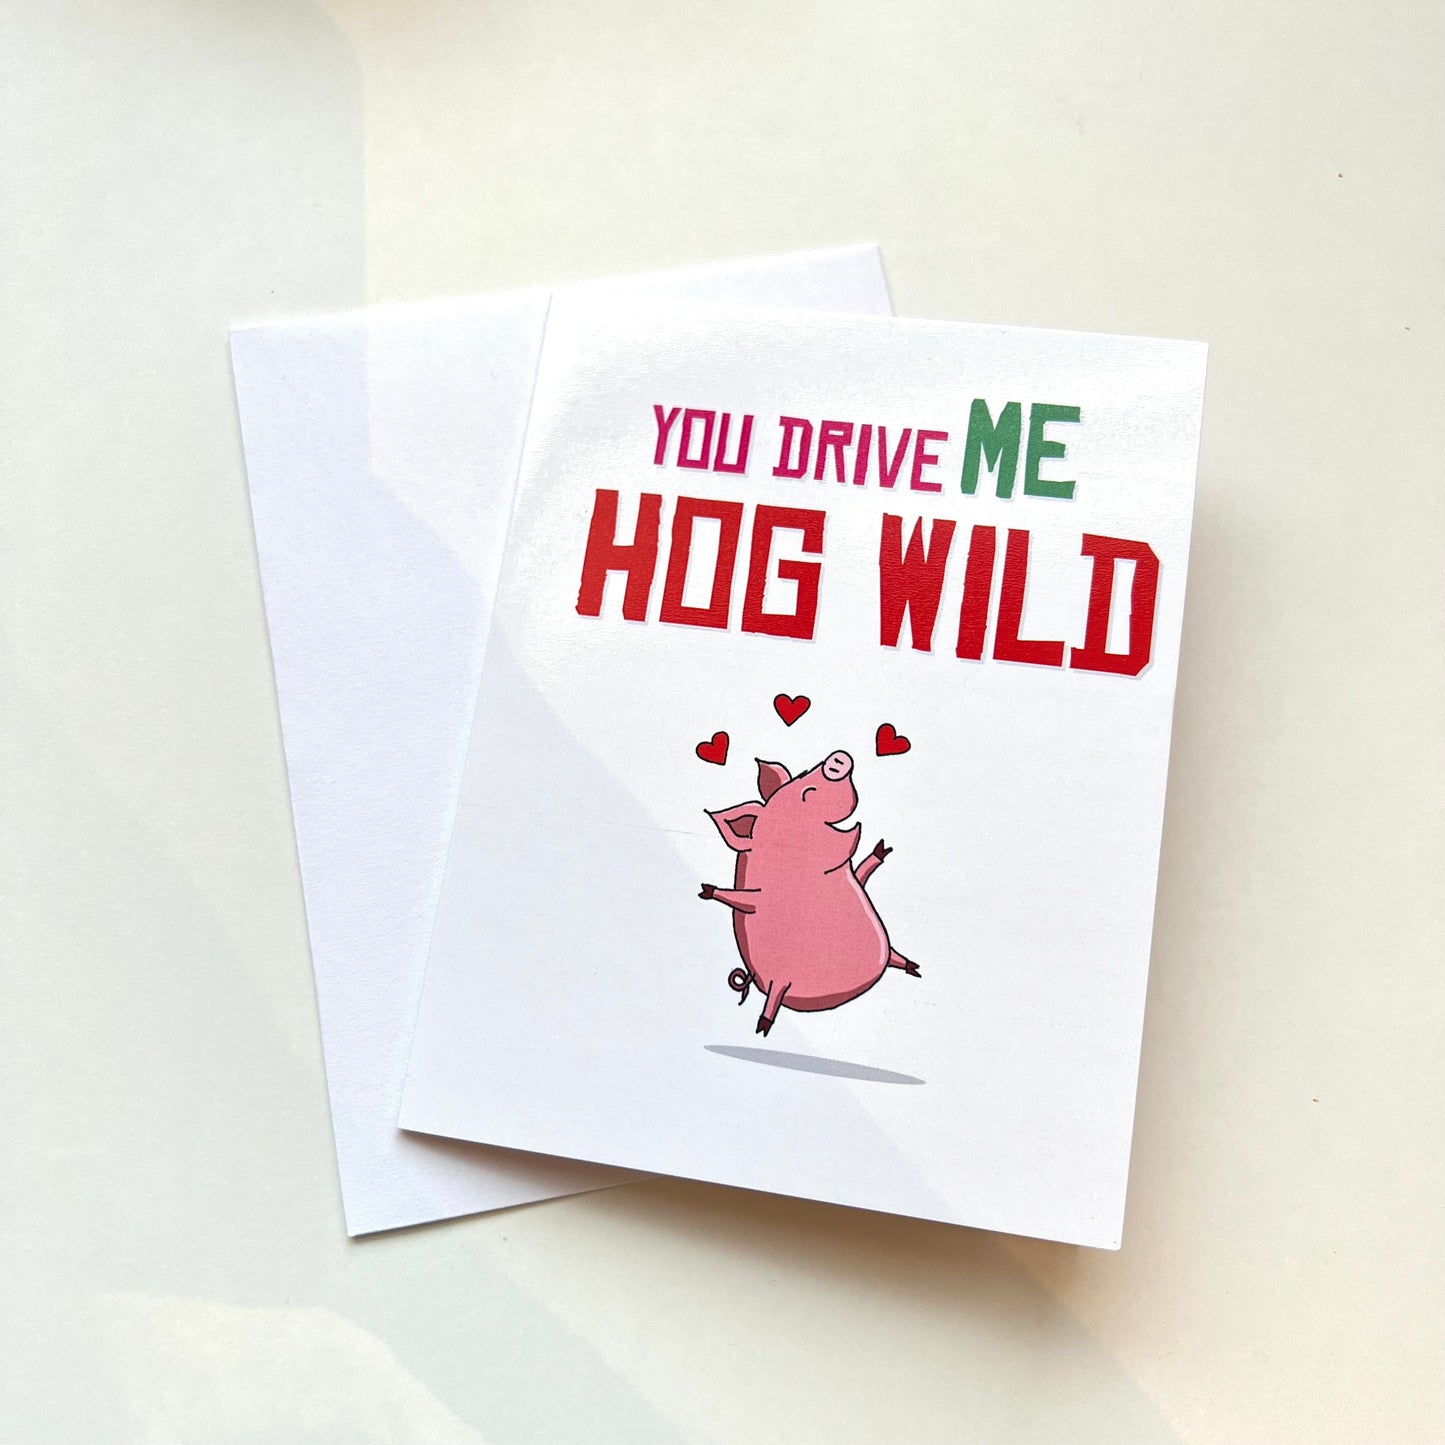 You Drive Me Hog Wild Card